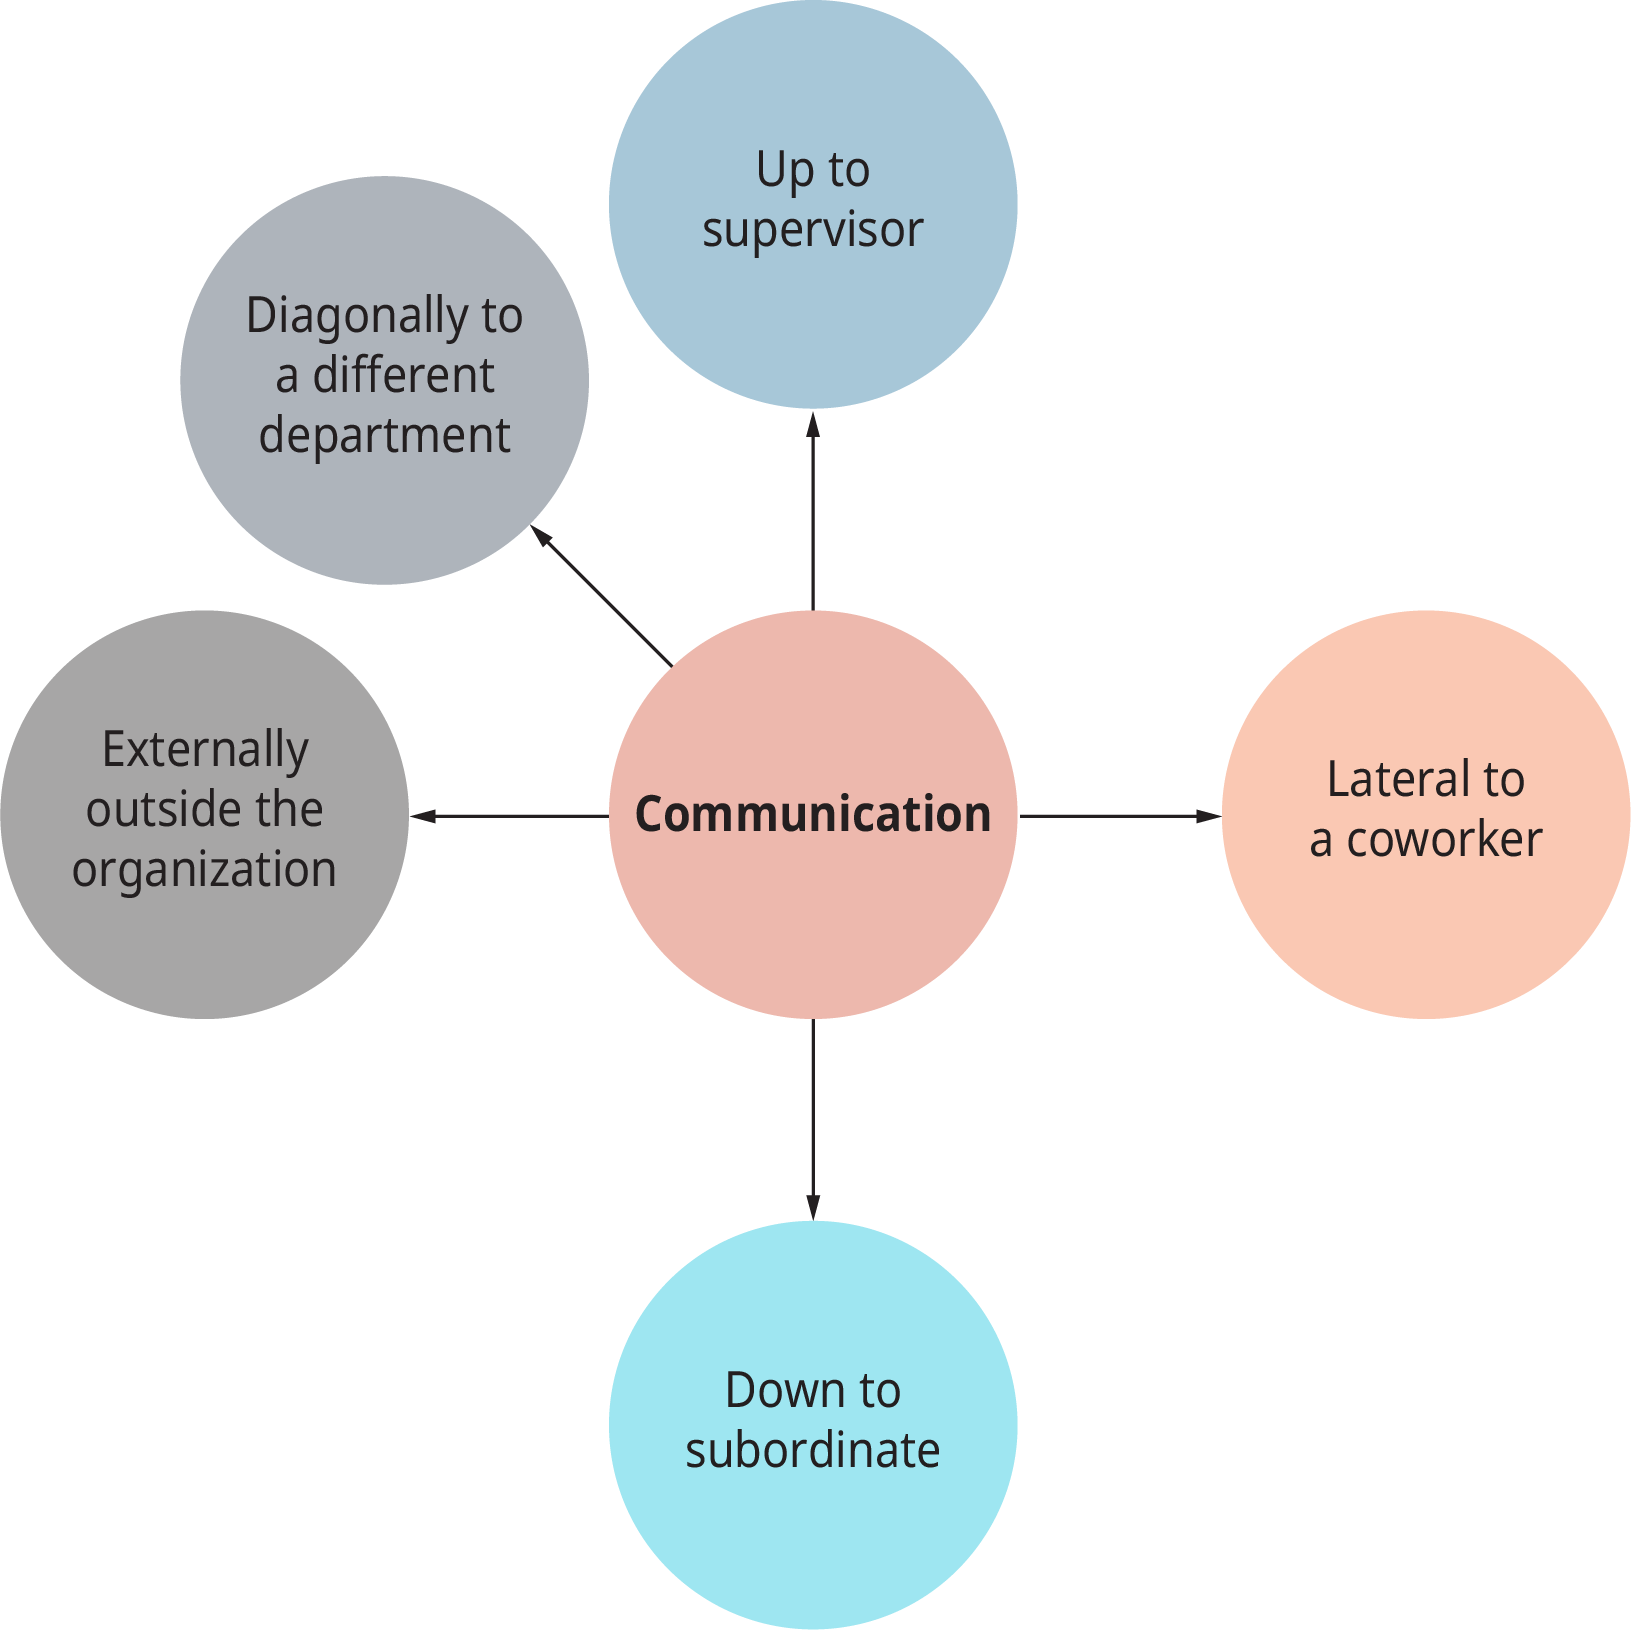 图表显示了各种沟通，说明了工作场所的社会影响。